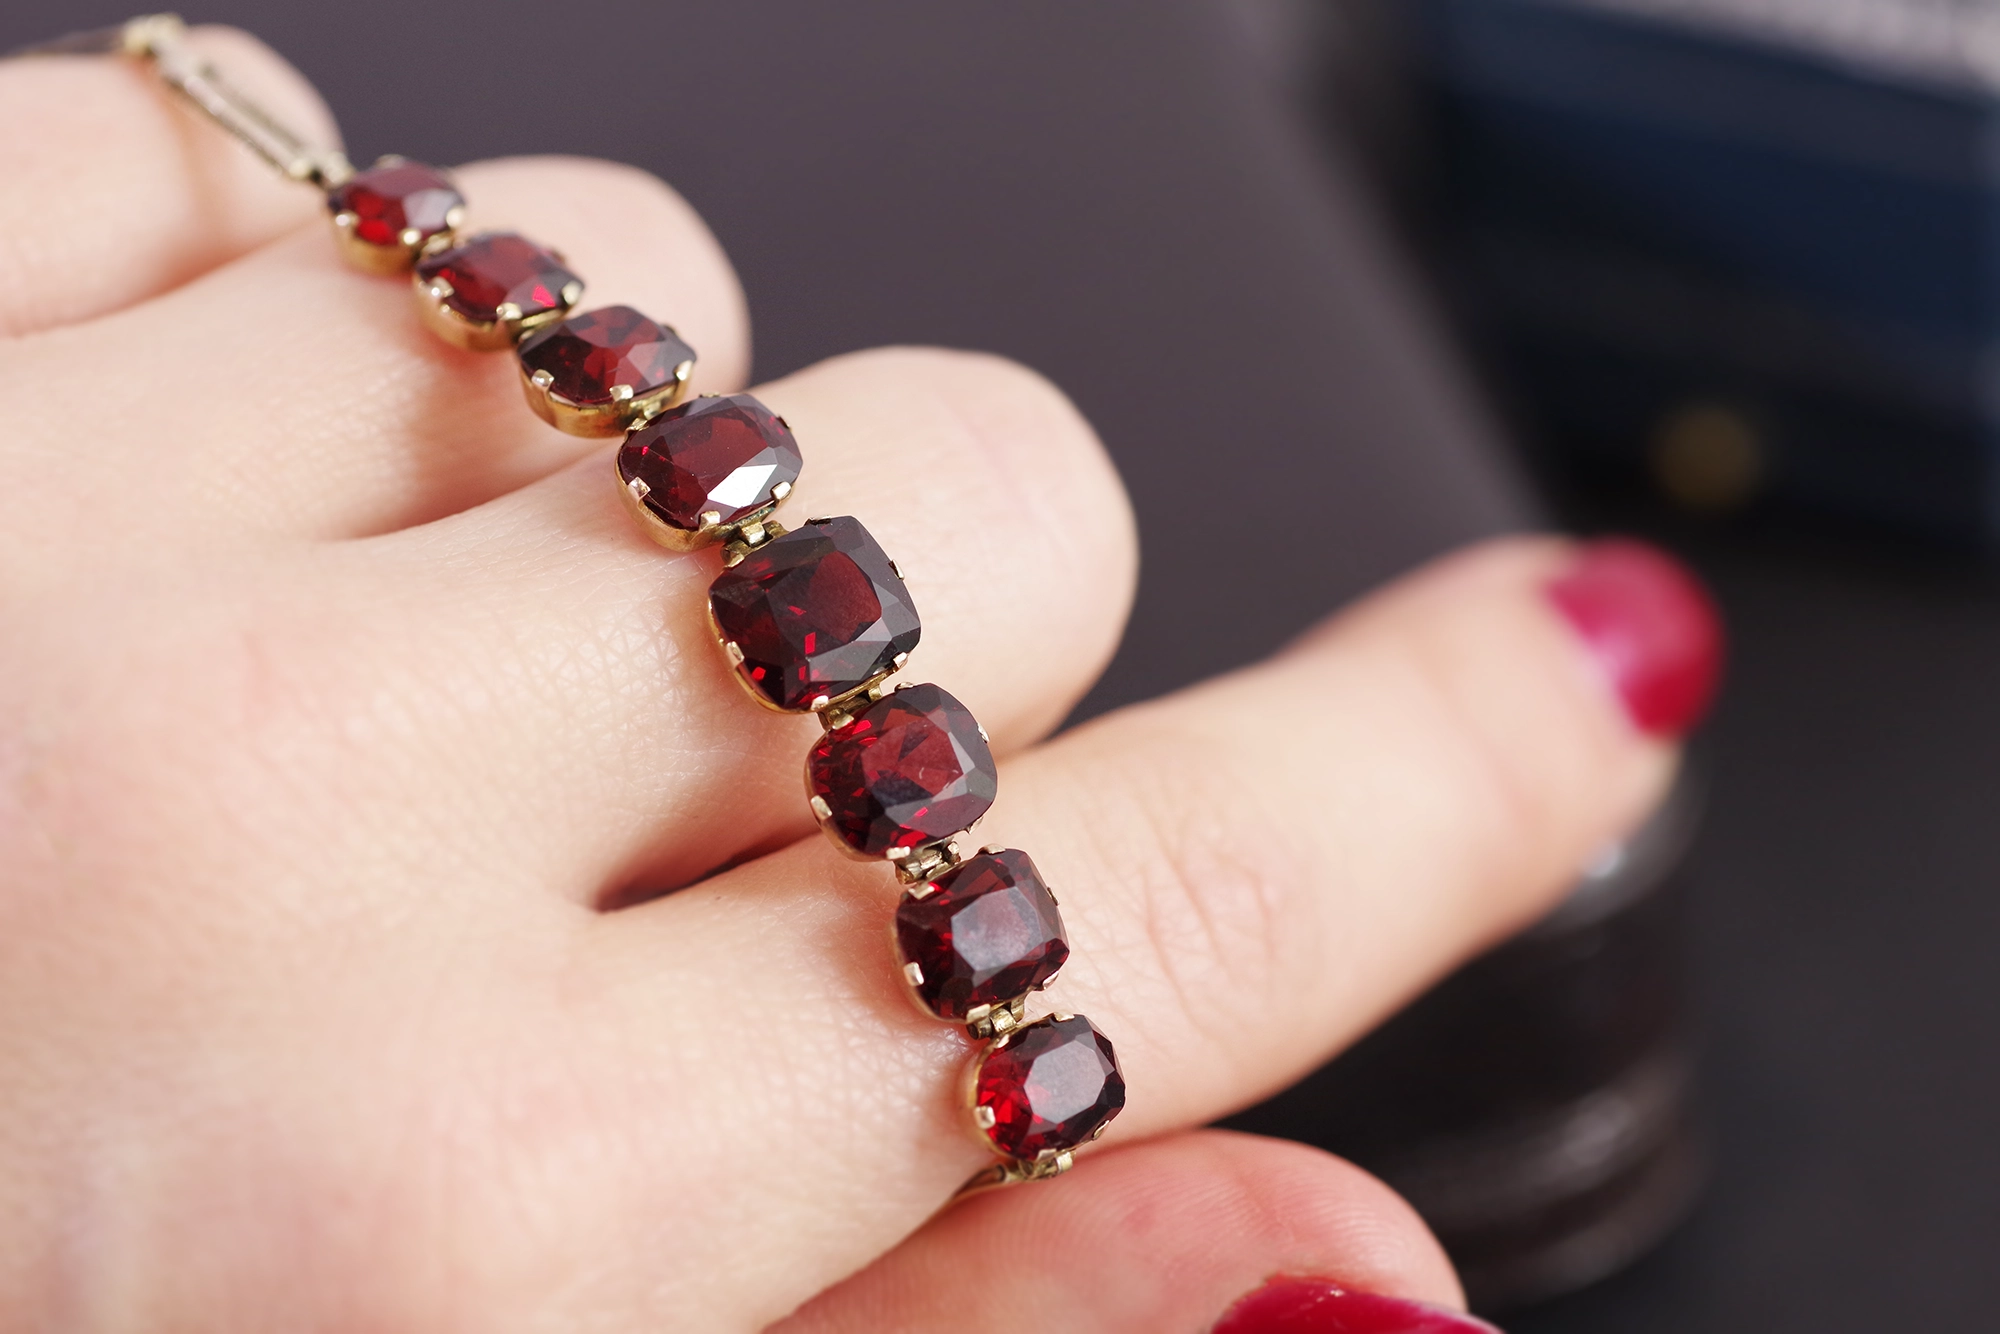 Faceted Garnet Bracelet - Tons of Sparkle - Adjustable Size!